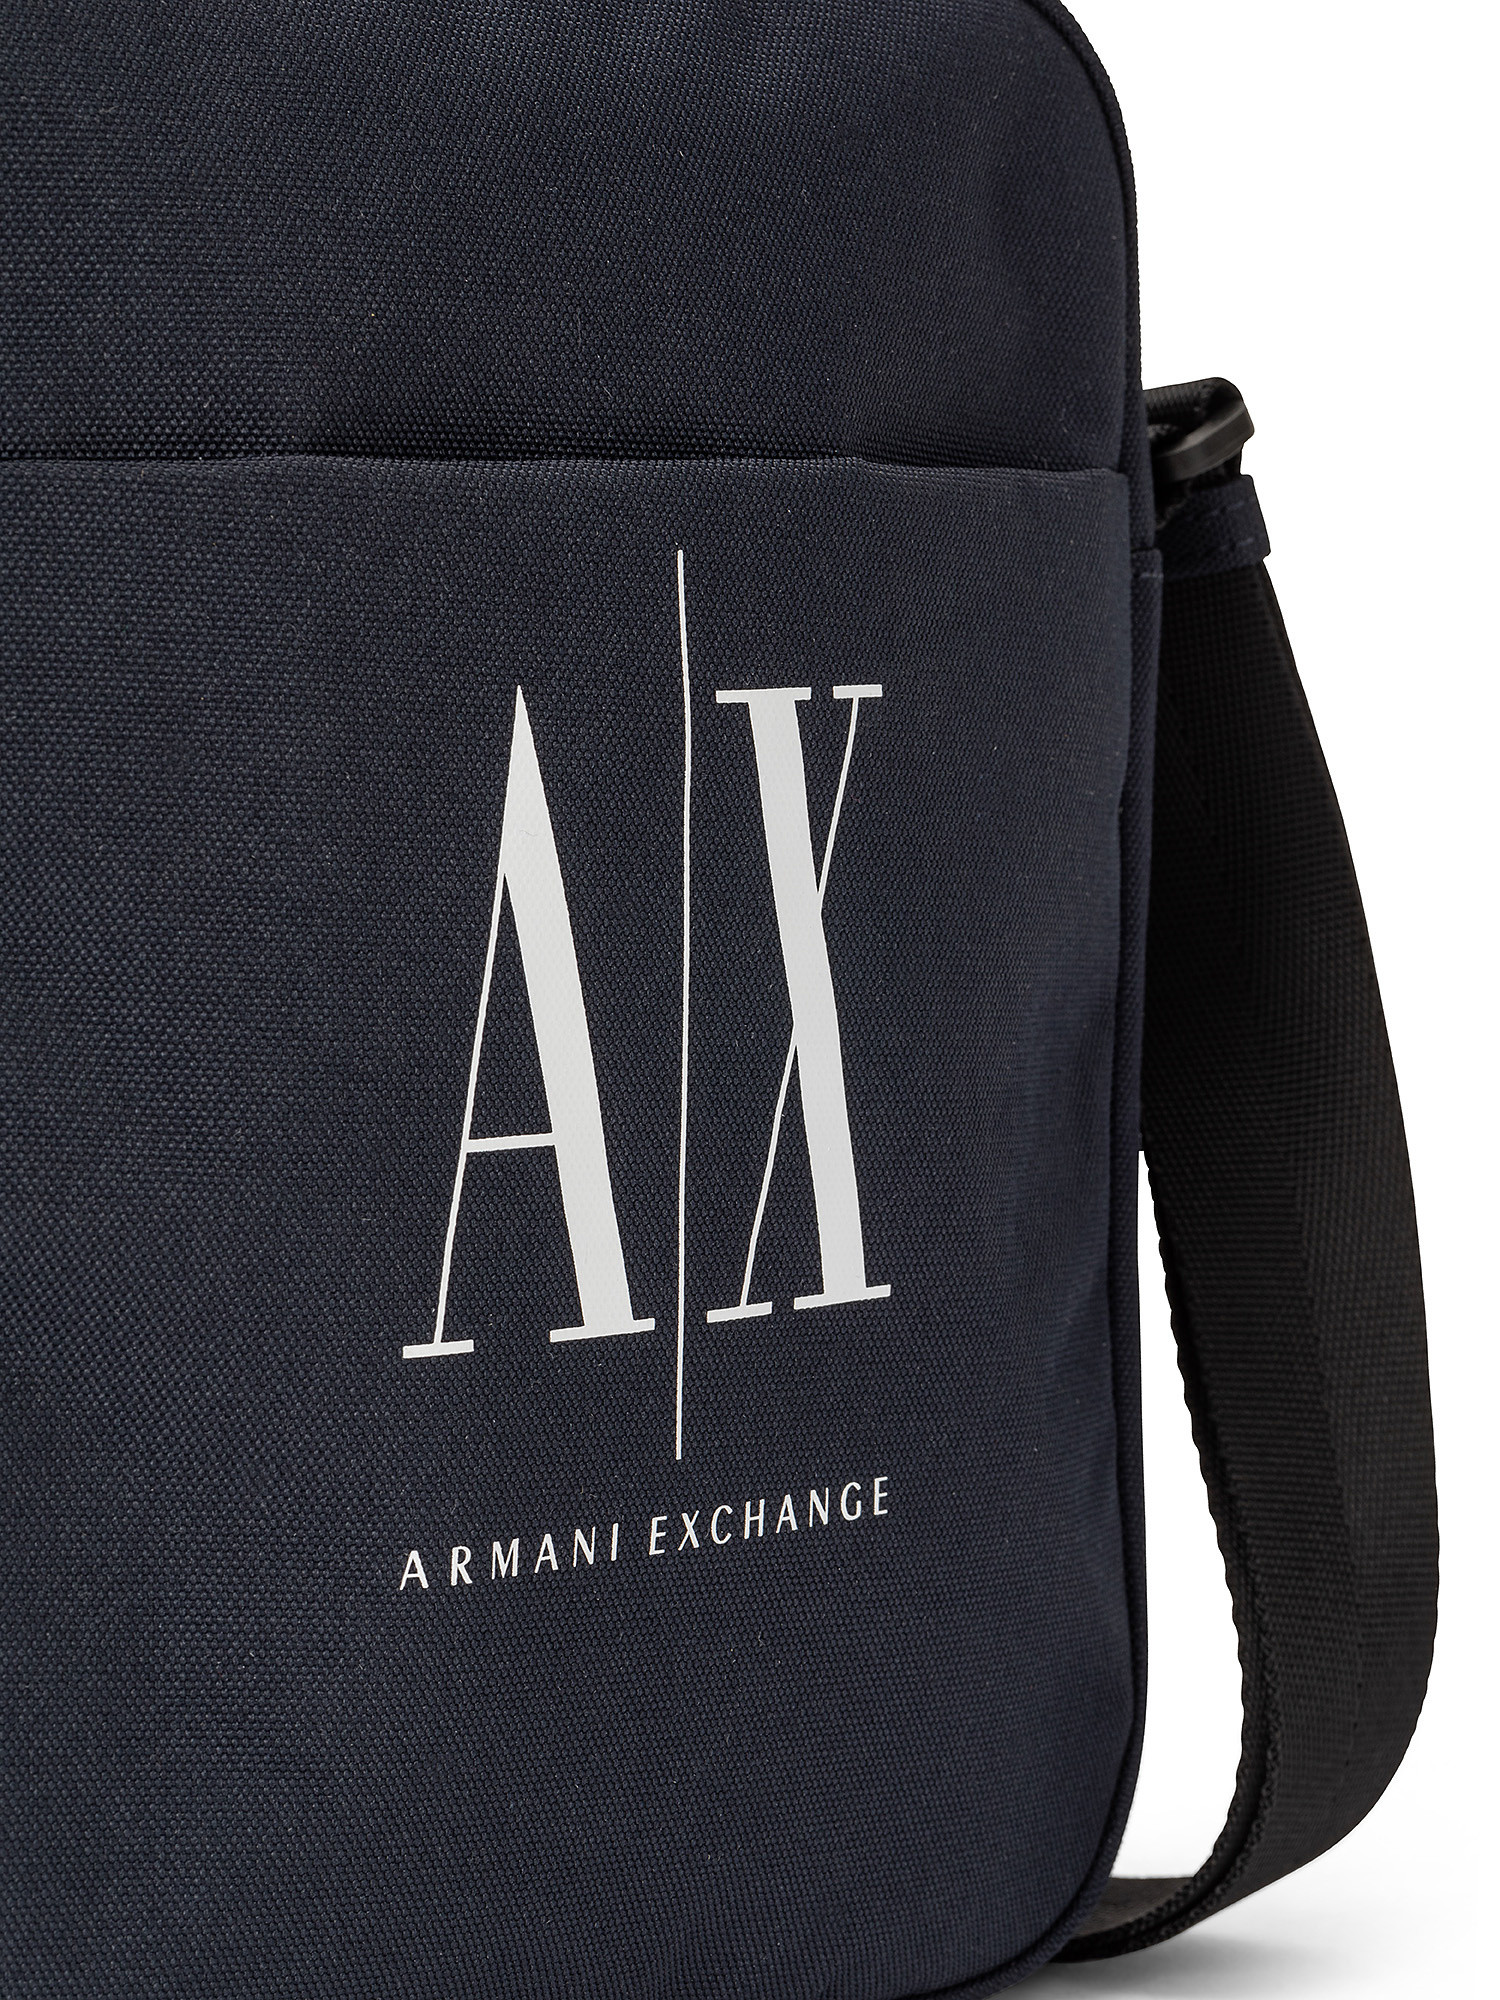 Armani Exchange - Nylon shoulder bag with contrasting logo, Dark Blue, large image number 2